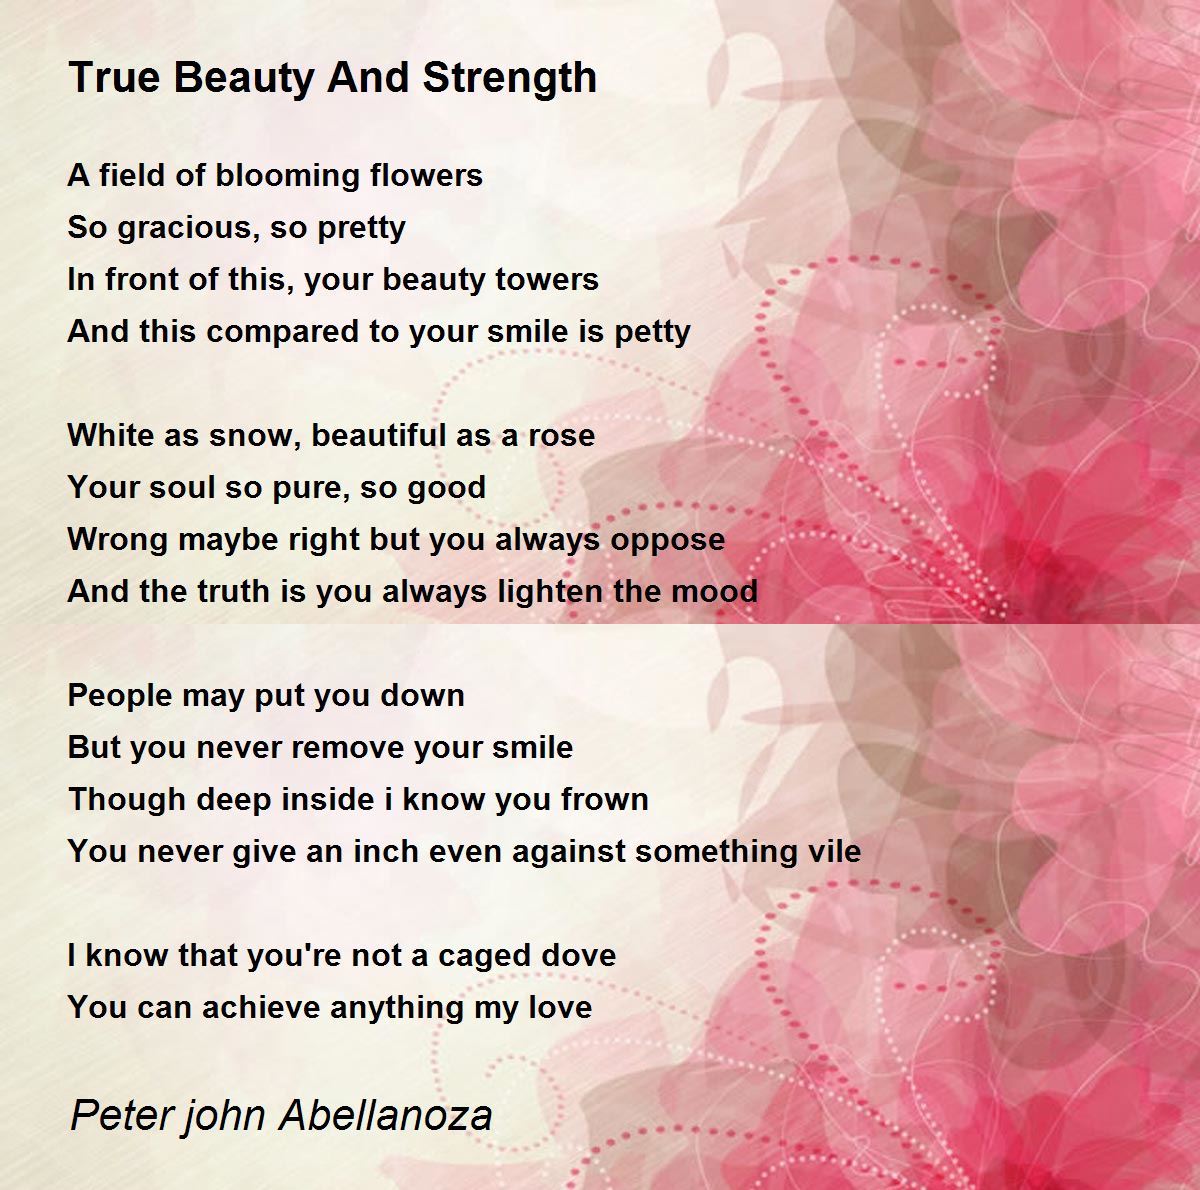 true beauty poem